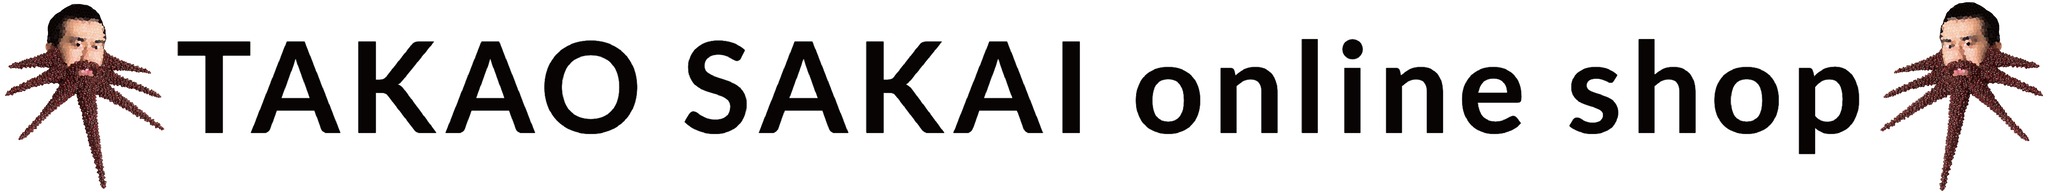 TAKAO SAKAI online shop